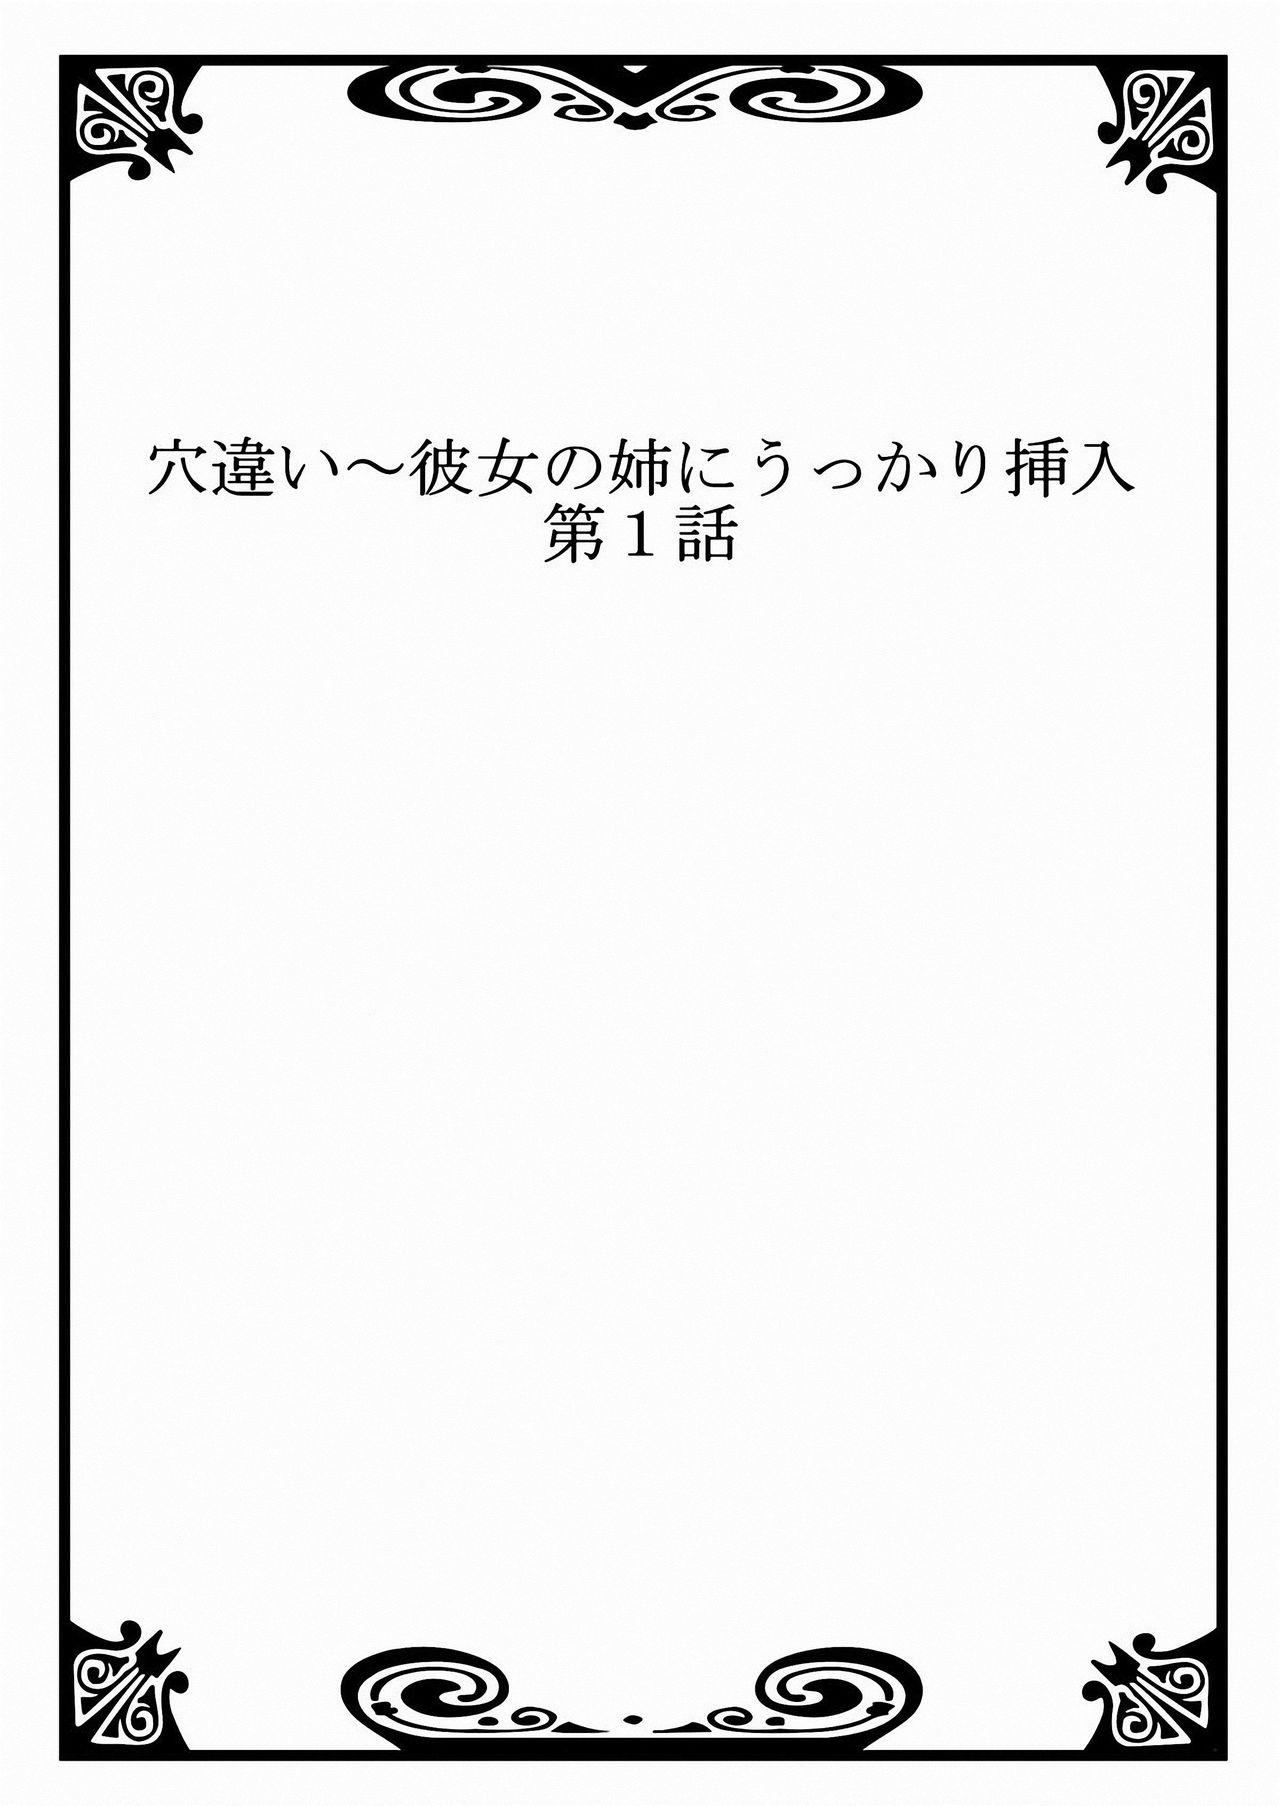 Chacal Ana Chigai〜Kanojo no Ane ni Ukkari Sounyuu Vol.1 Korean - Page 3